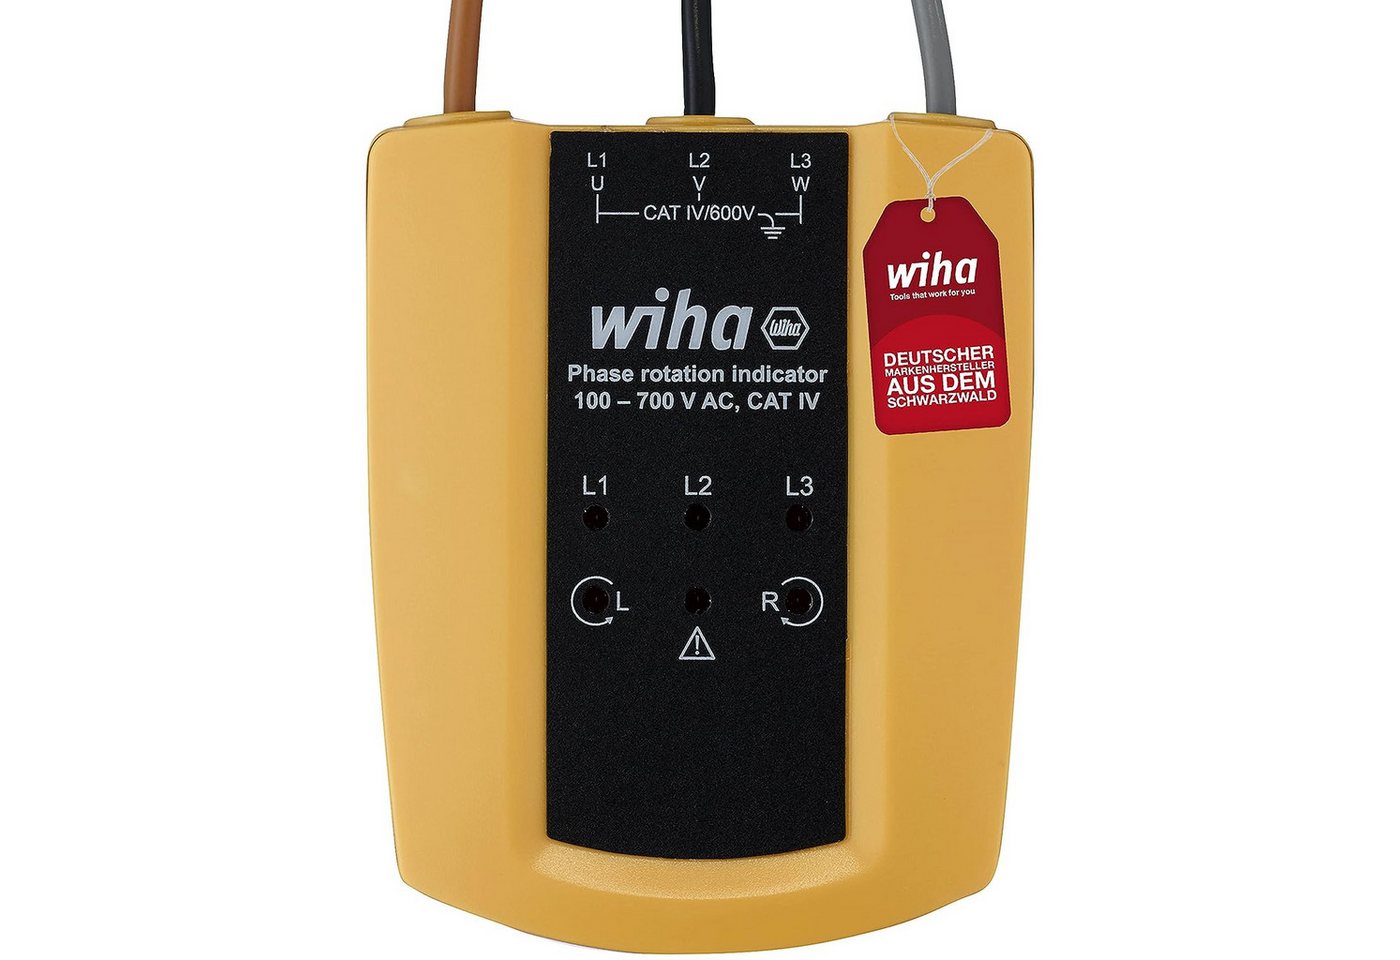 Wiha Spannungsprüfer Elektriker (45221), 100 - 700 V AC, CAT IV, 3 Phasen mit nur einer Prüfung, LED-Anzeige von Wiha